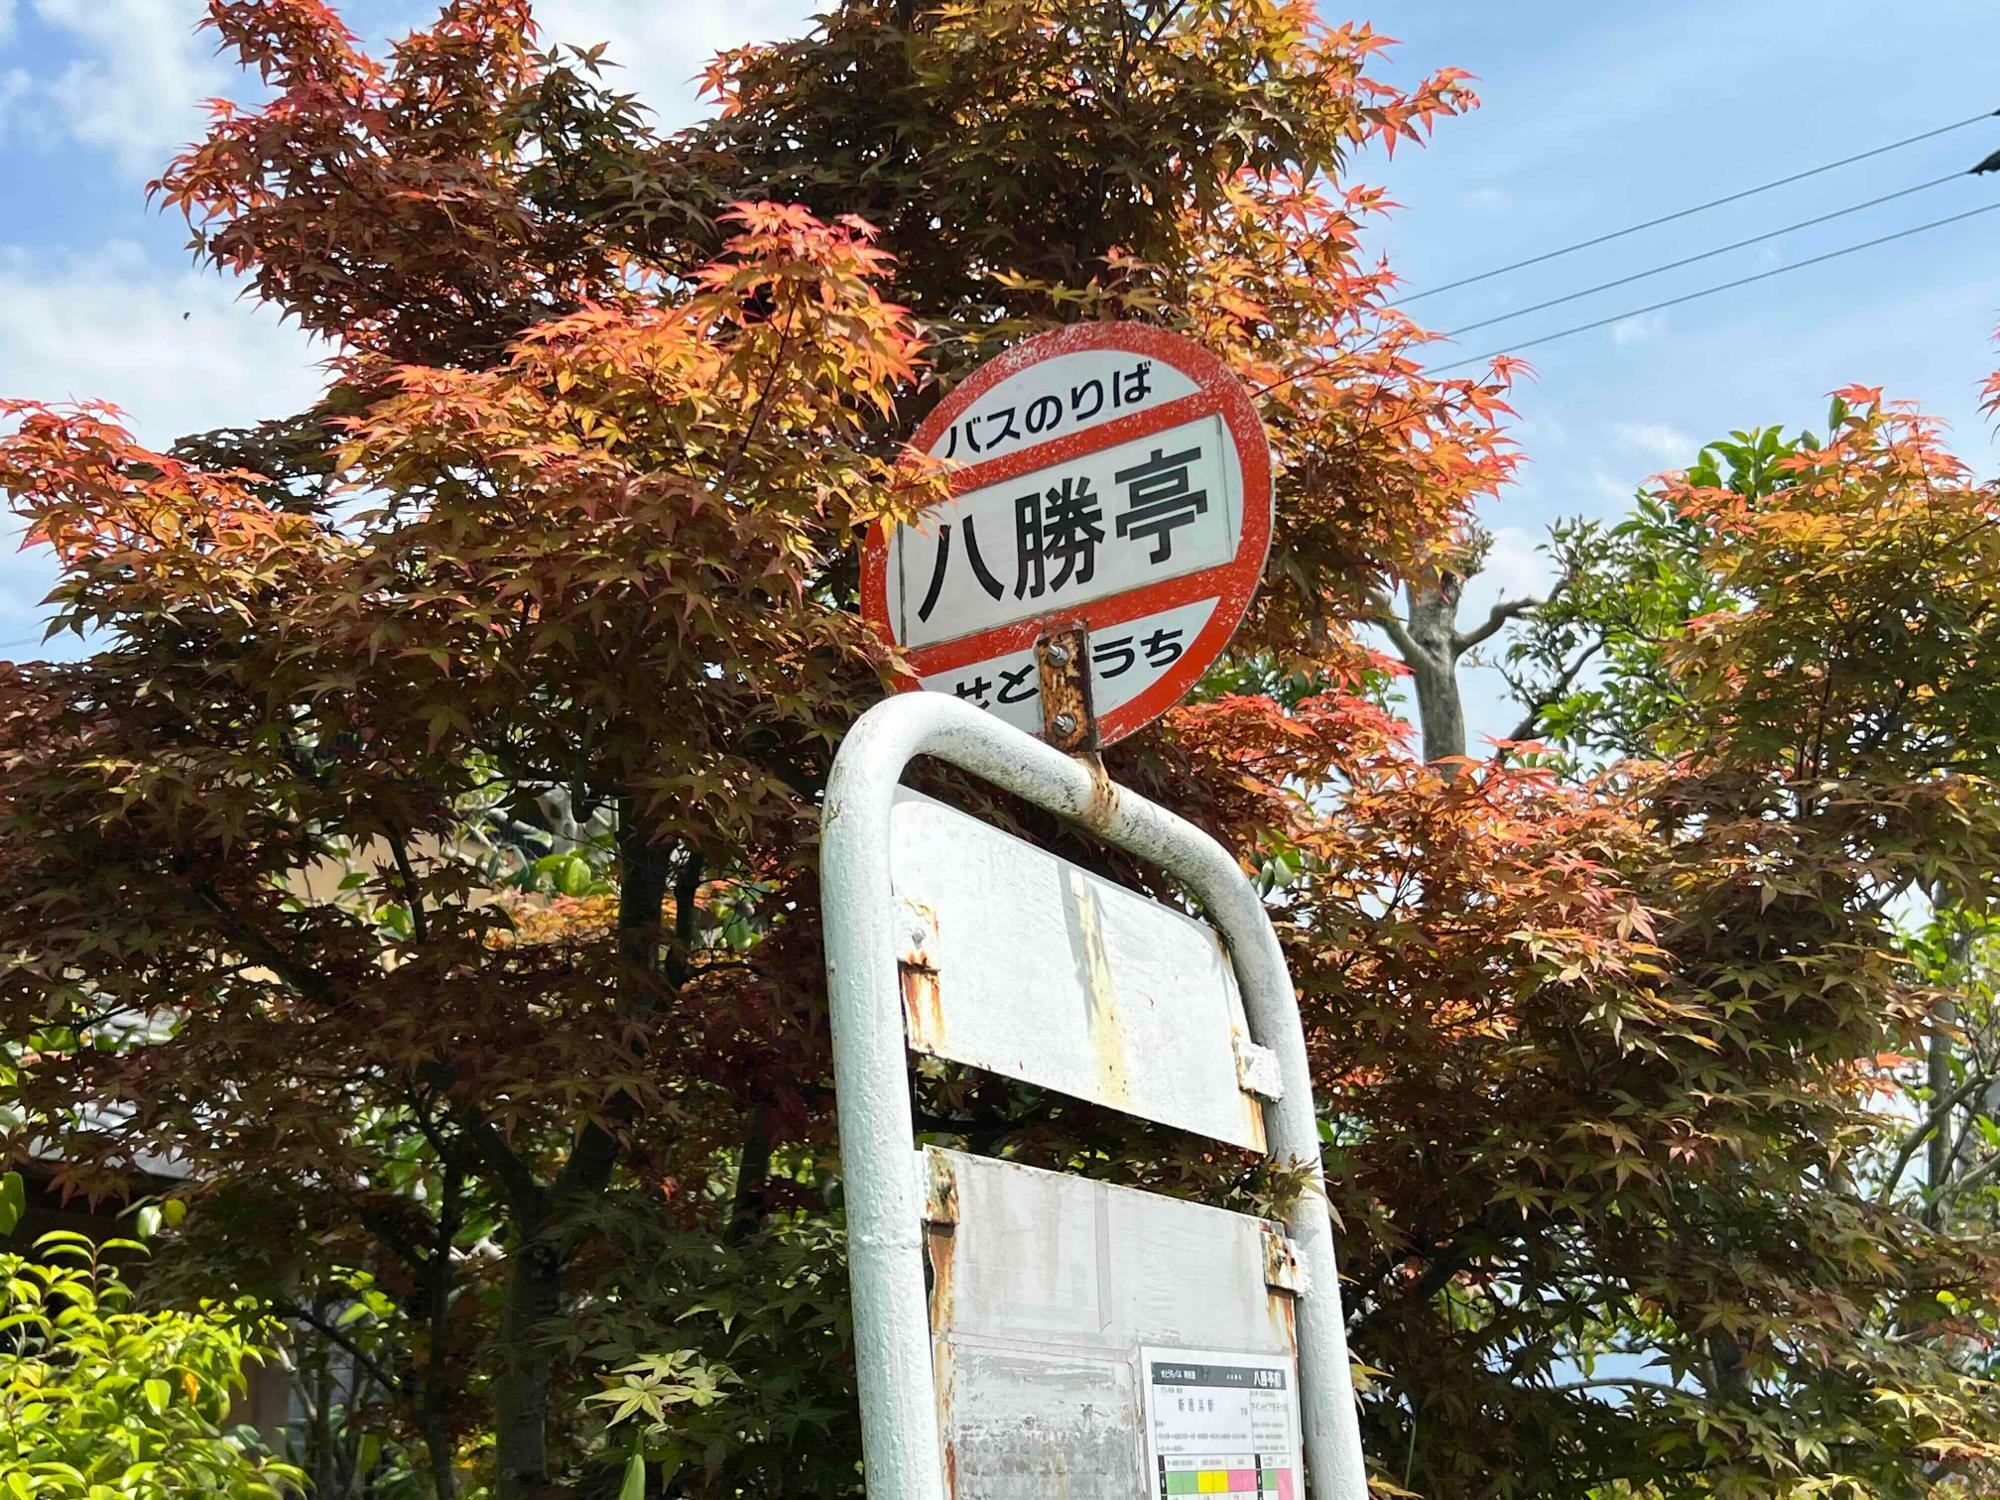 「八勝亭」というバス停があるのも長年地域に愛されている証だと思うのです。